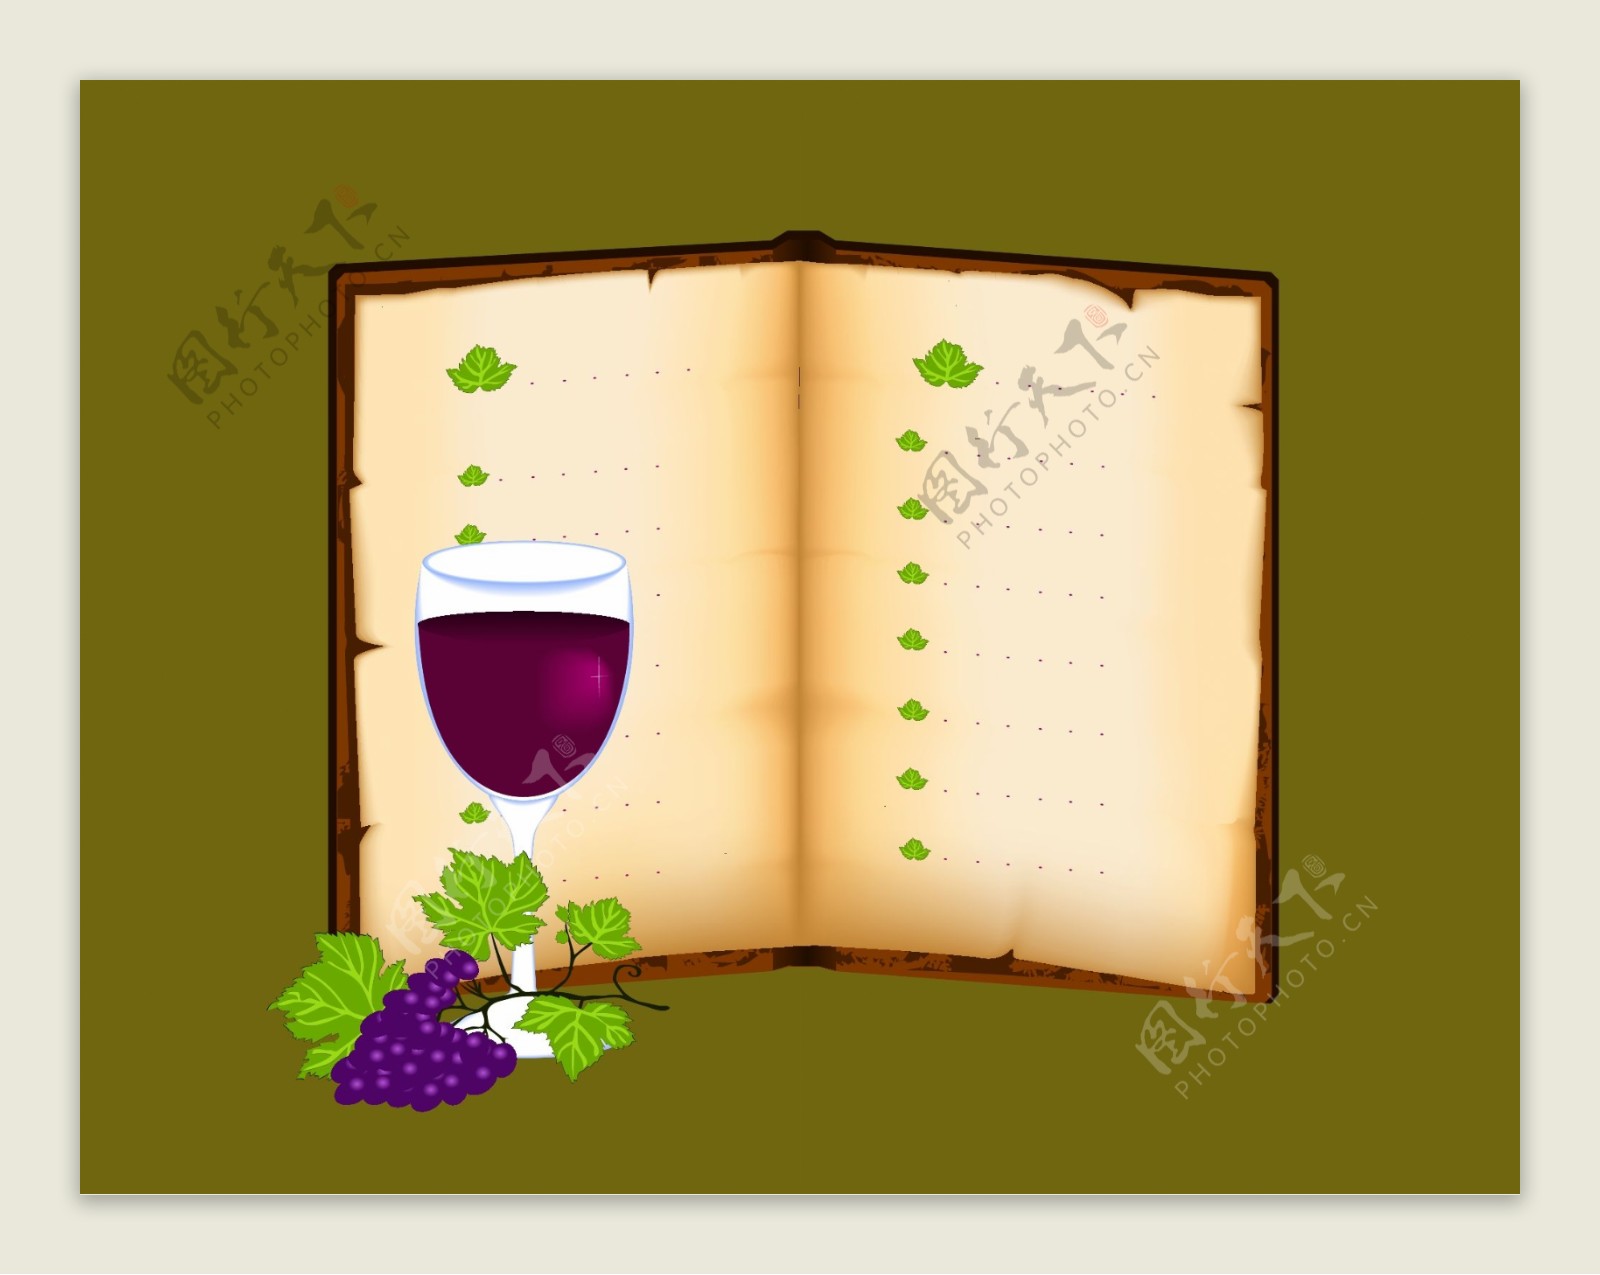 漂亮的书本与葡萄酒矢量素材